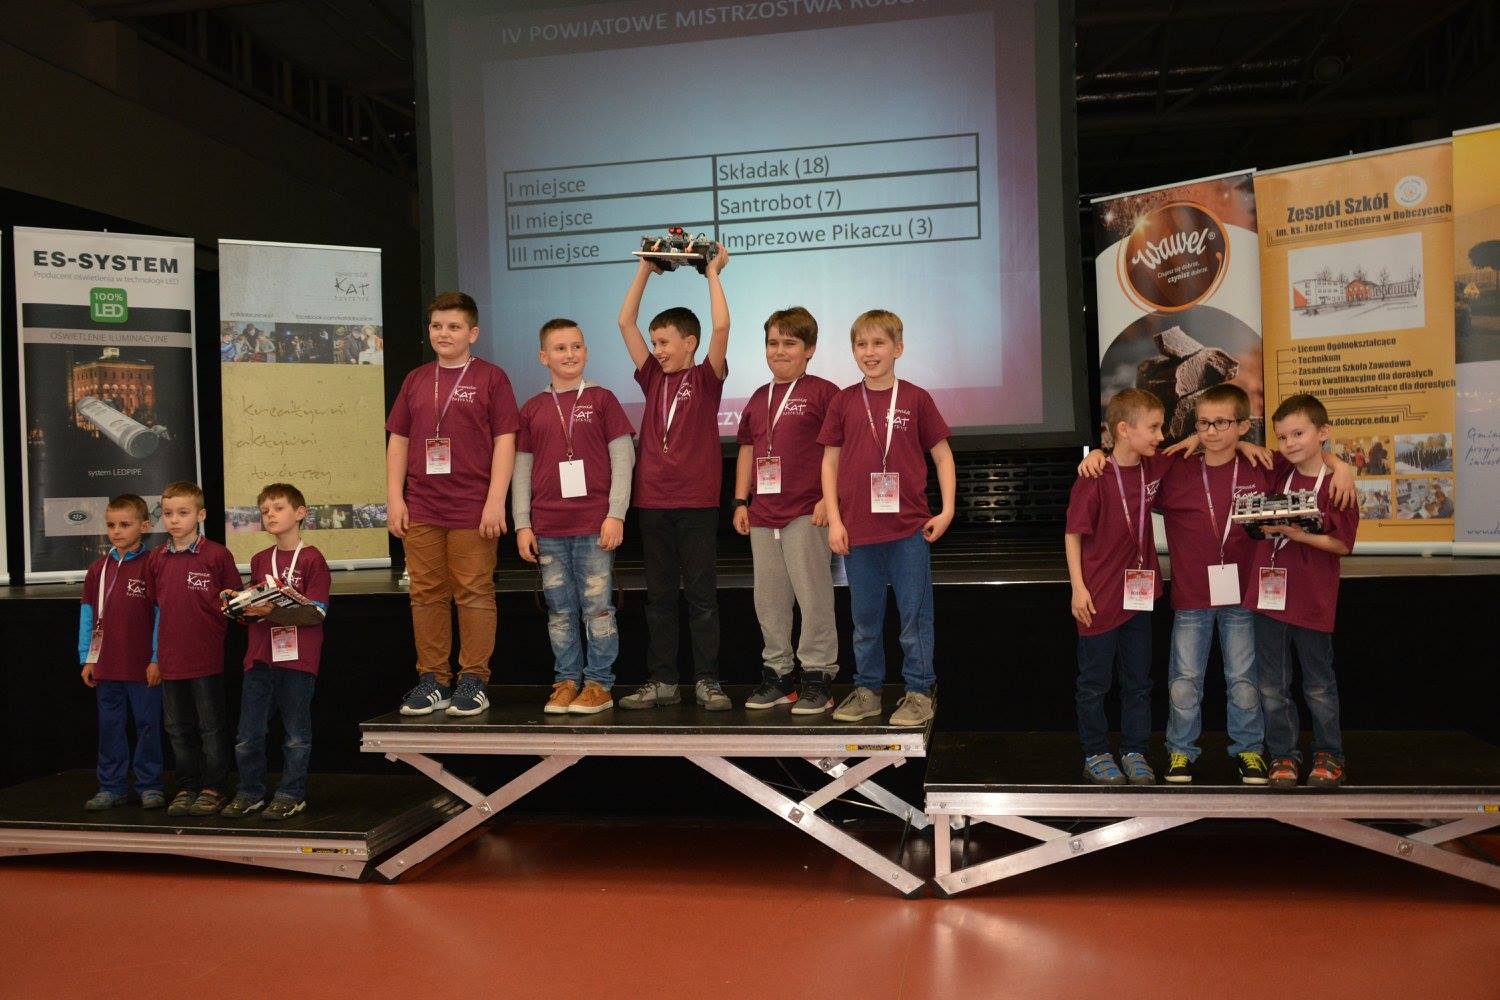 IV Powiatowe Mistrzostwa Robotów 